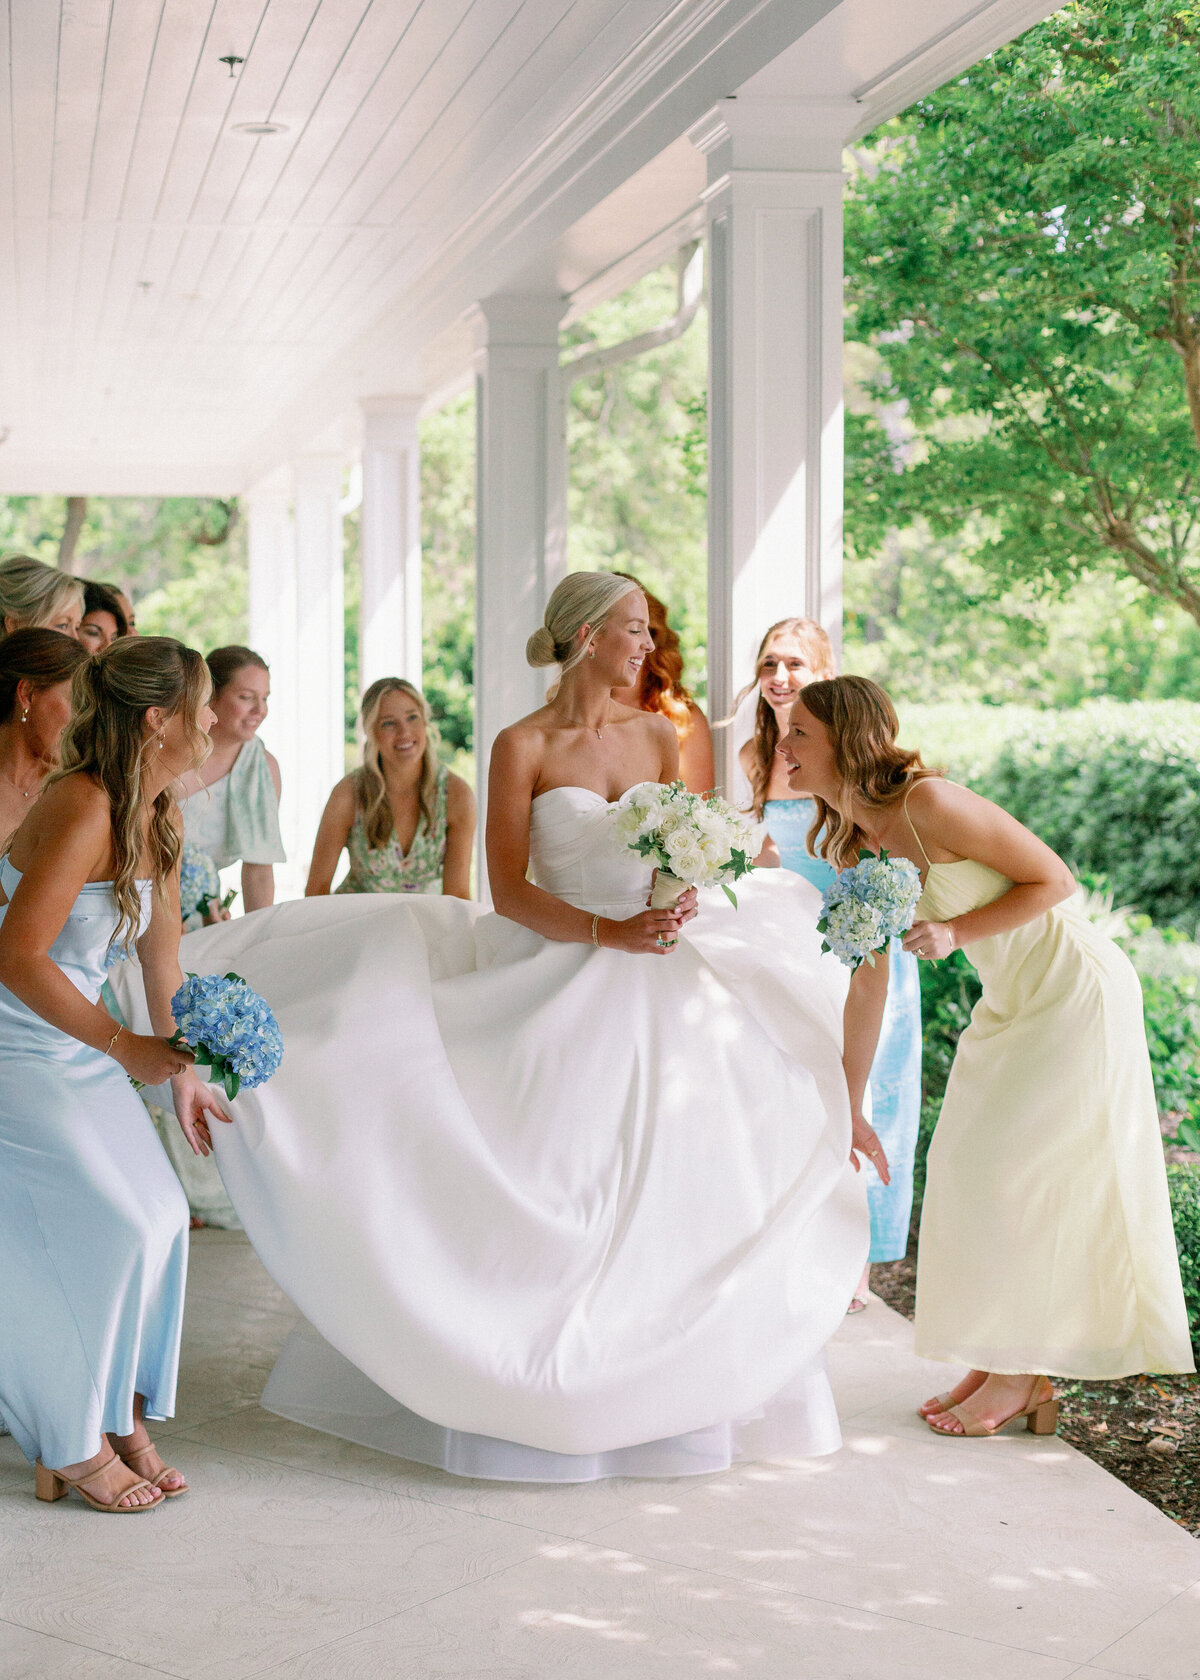 Bride and bridesmaid photos